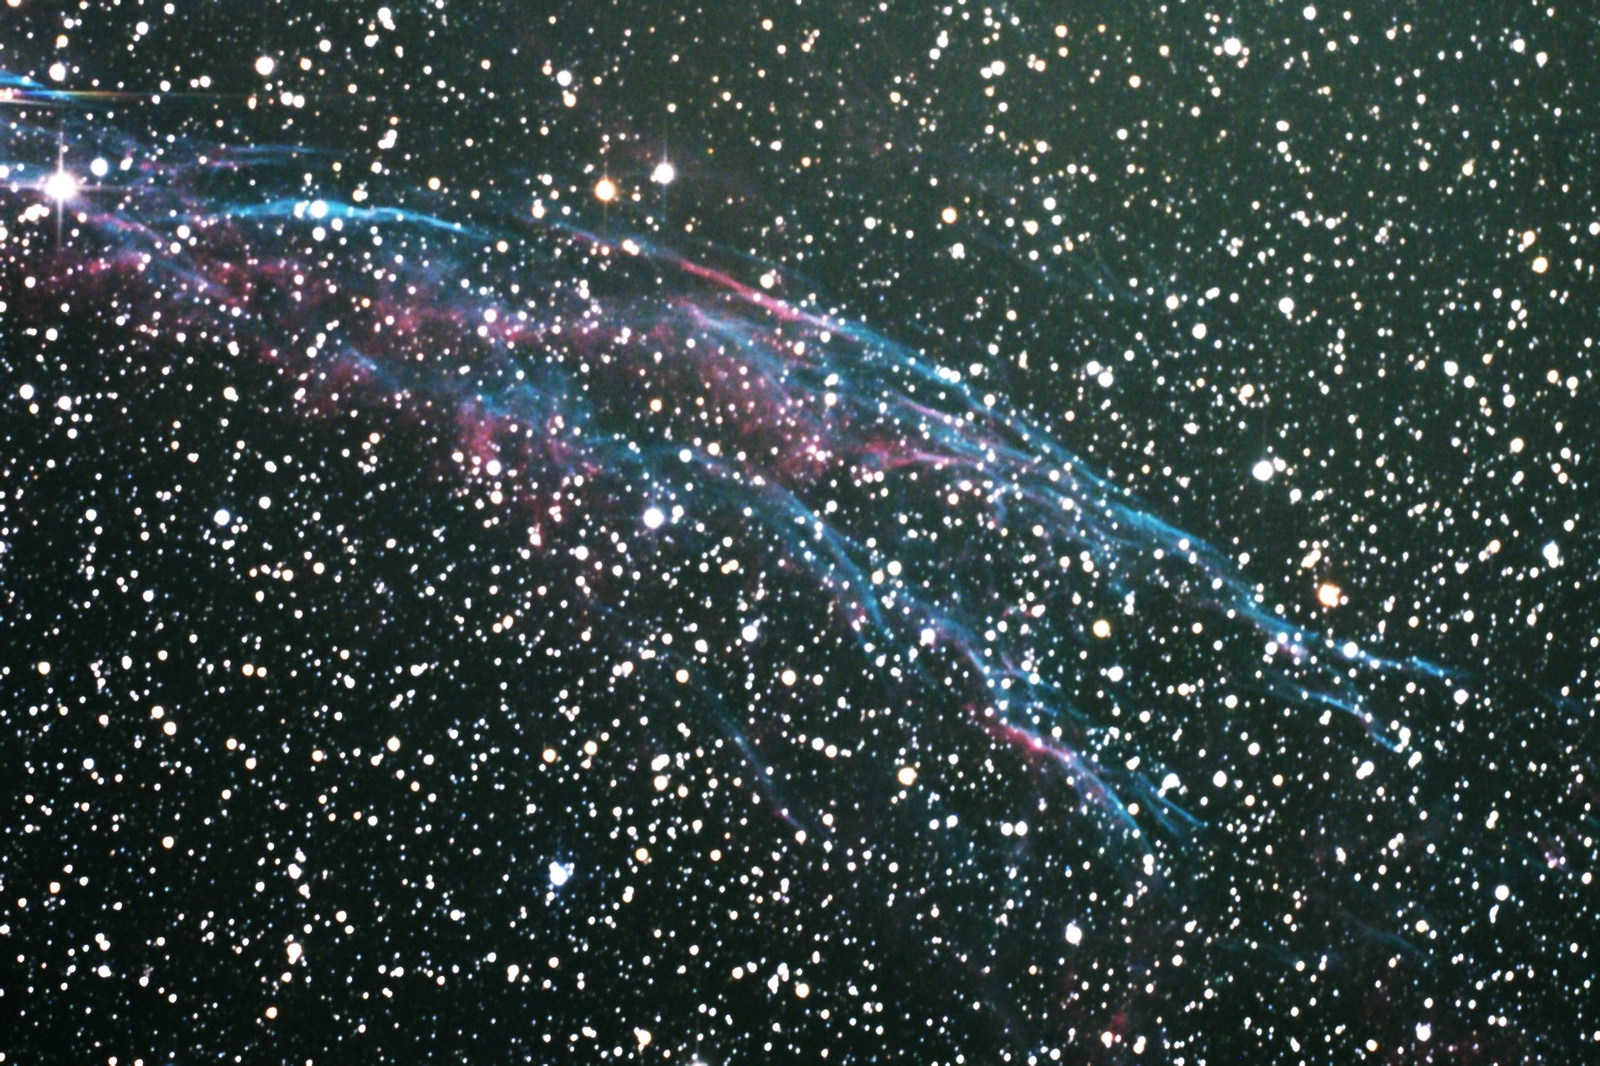 Veil Nebula Frame 20 23AUG17 Crop PSP03.jpg